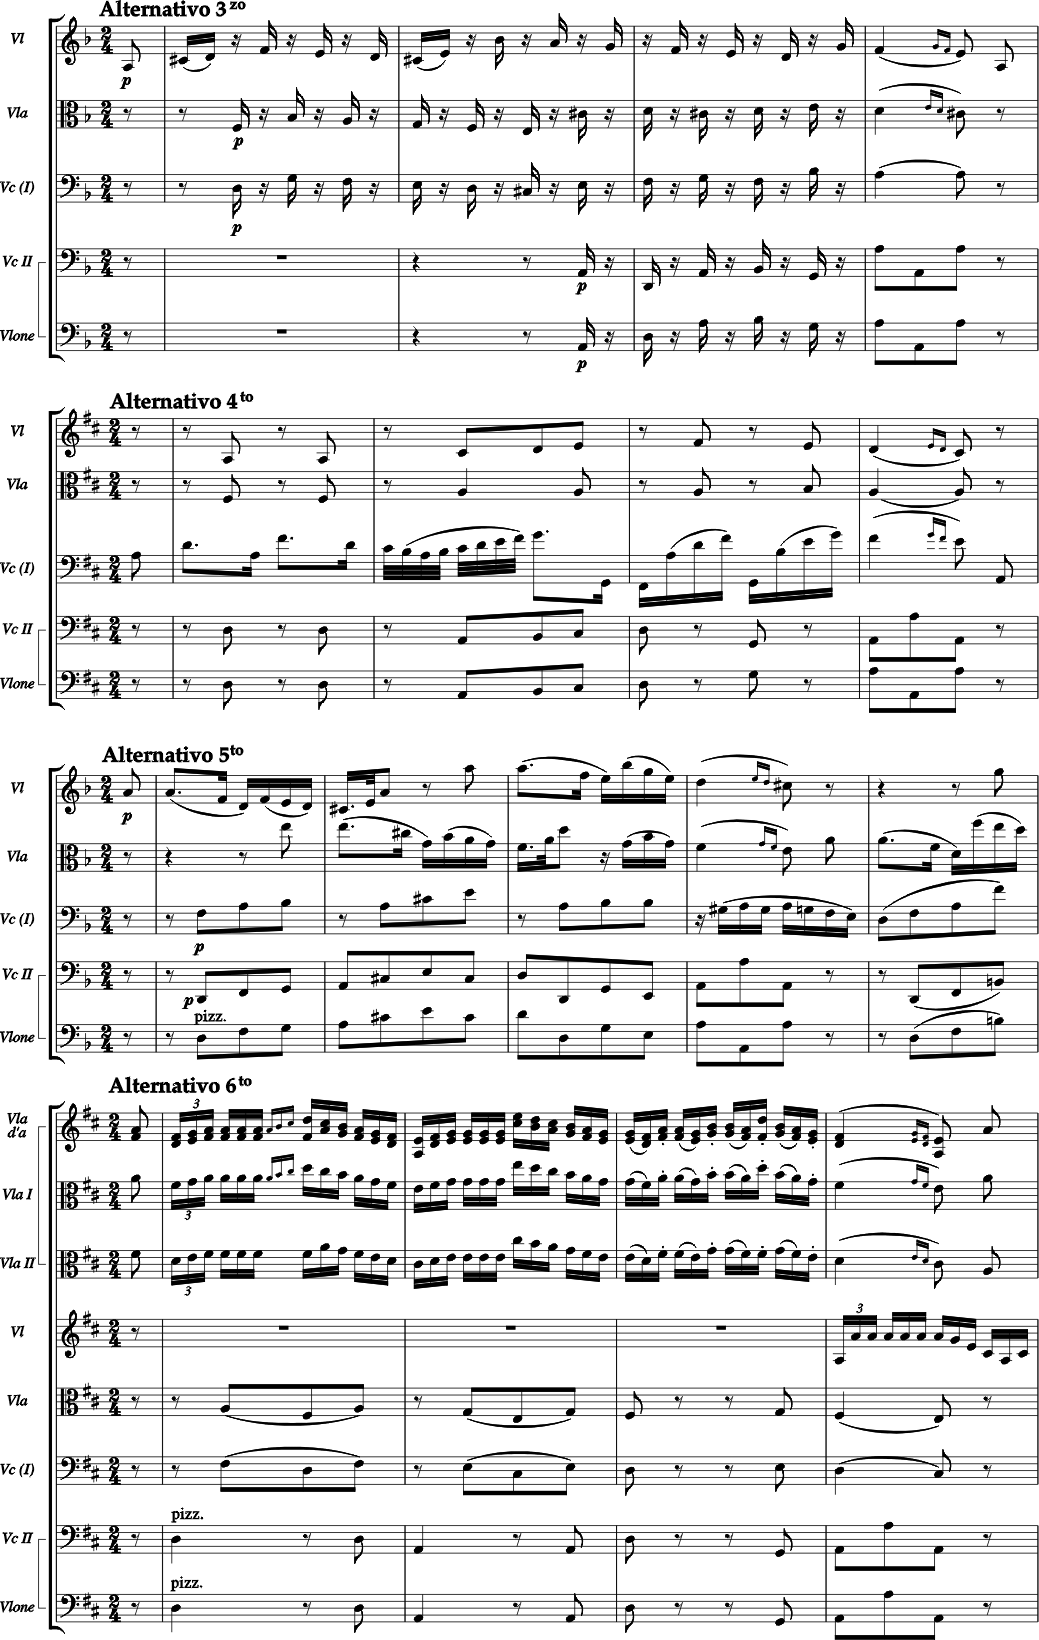 two Violas, Violin, Viola, Cello and Violone / Double bass (Cello II)